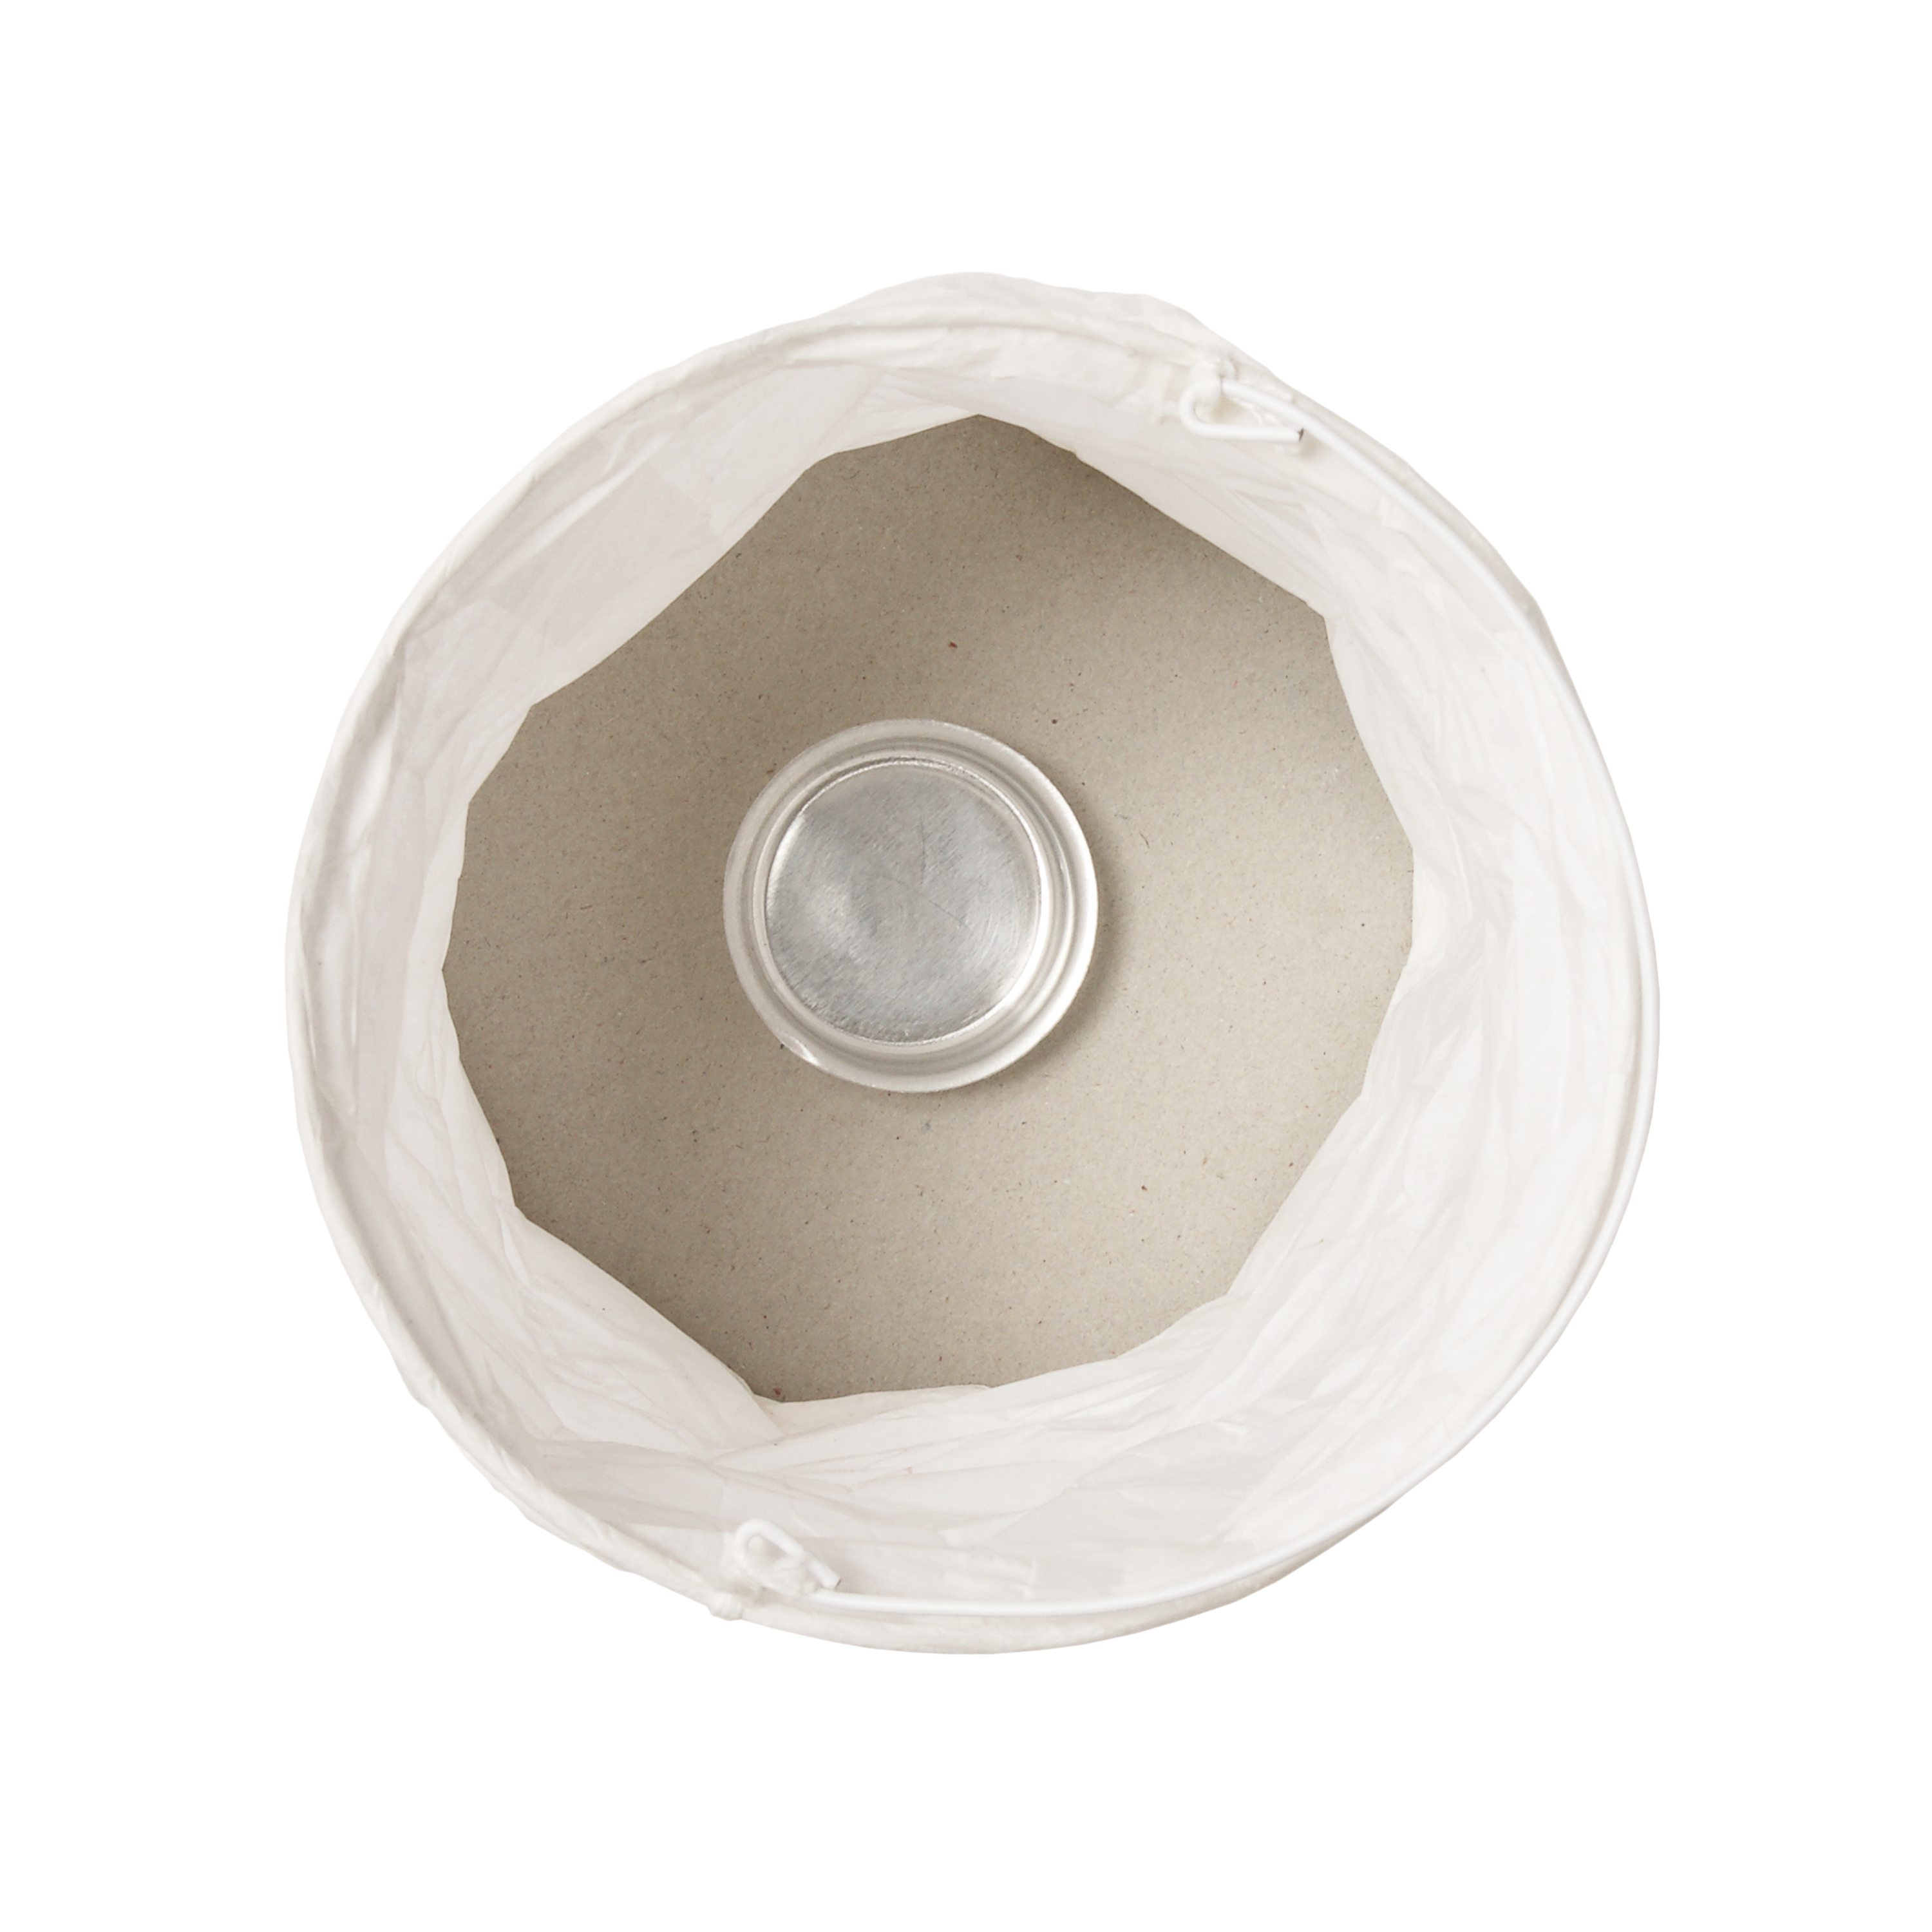 6 Papierlampions in Crash-Optik 'Zylinder', weiß, Ø 10 cm